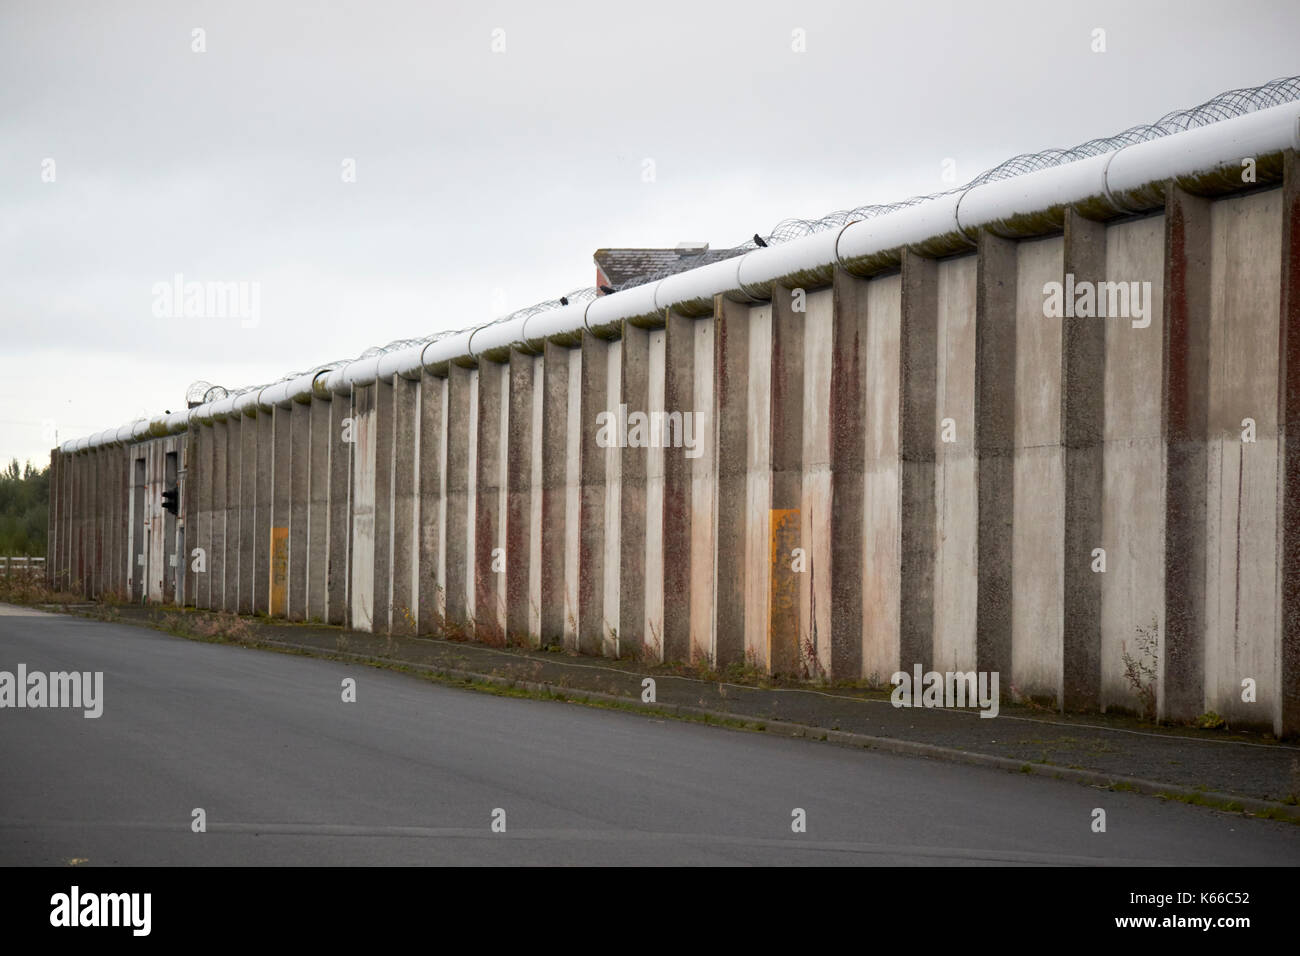 Strada di accesso e filo spinato e rabboccato pareti interne di uno dei blocchi di h nella ex prigione labirinto long kesh sito Irlanda del Nord Foto Stock